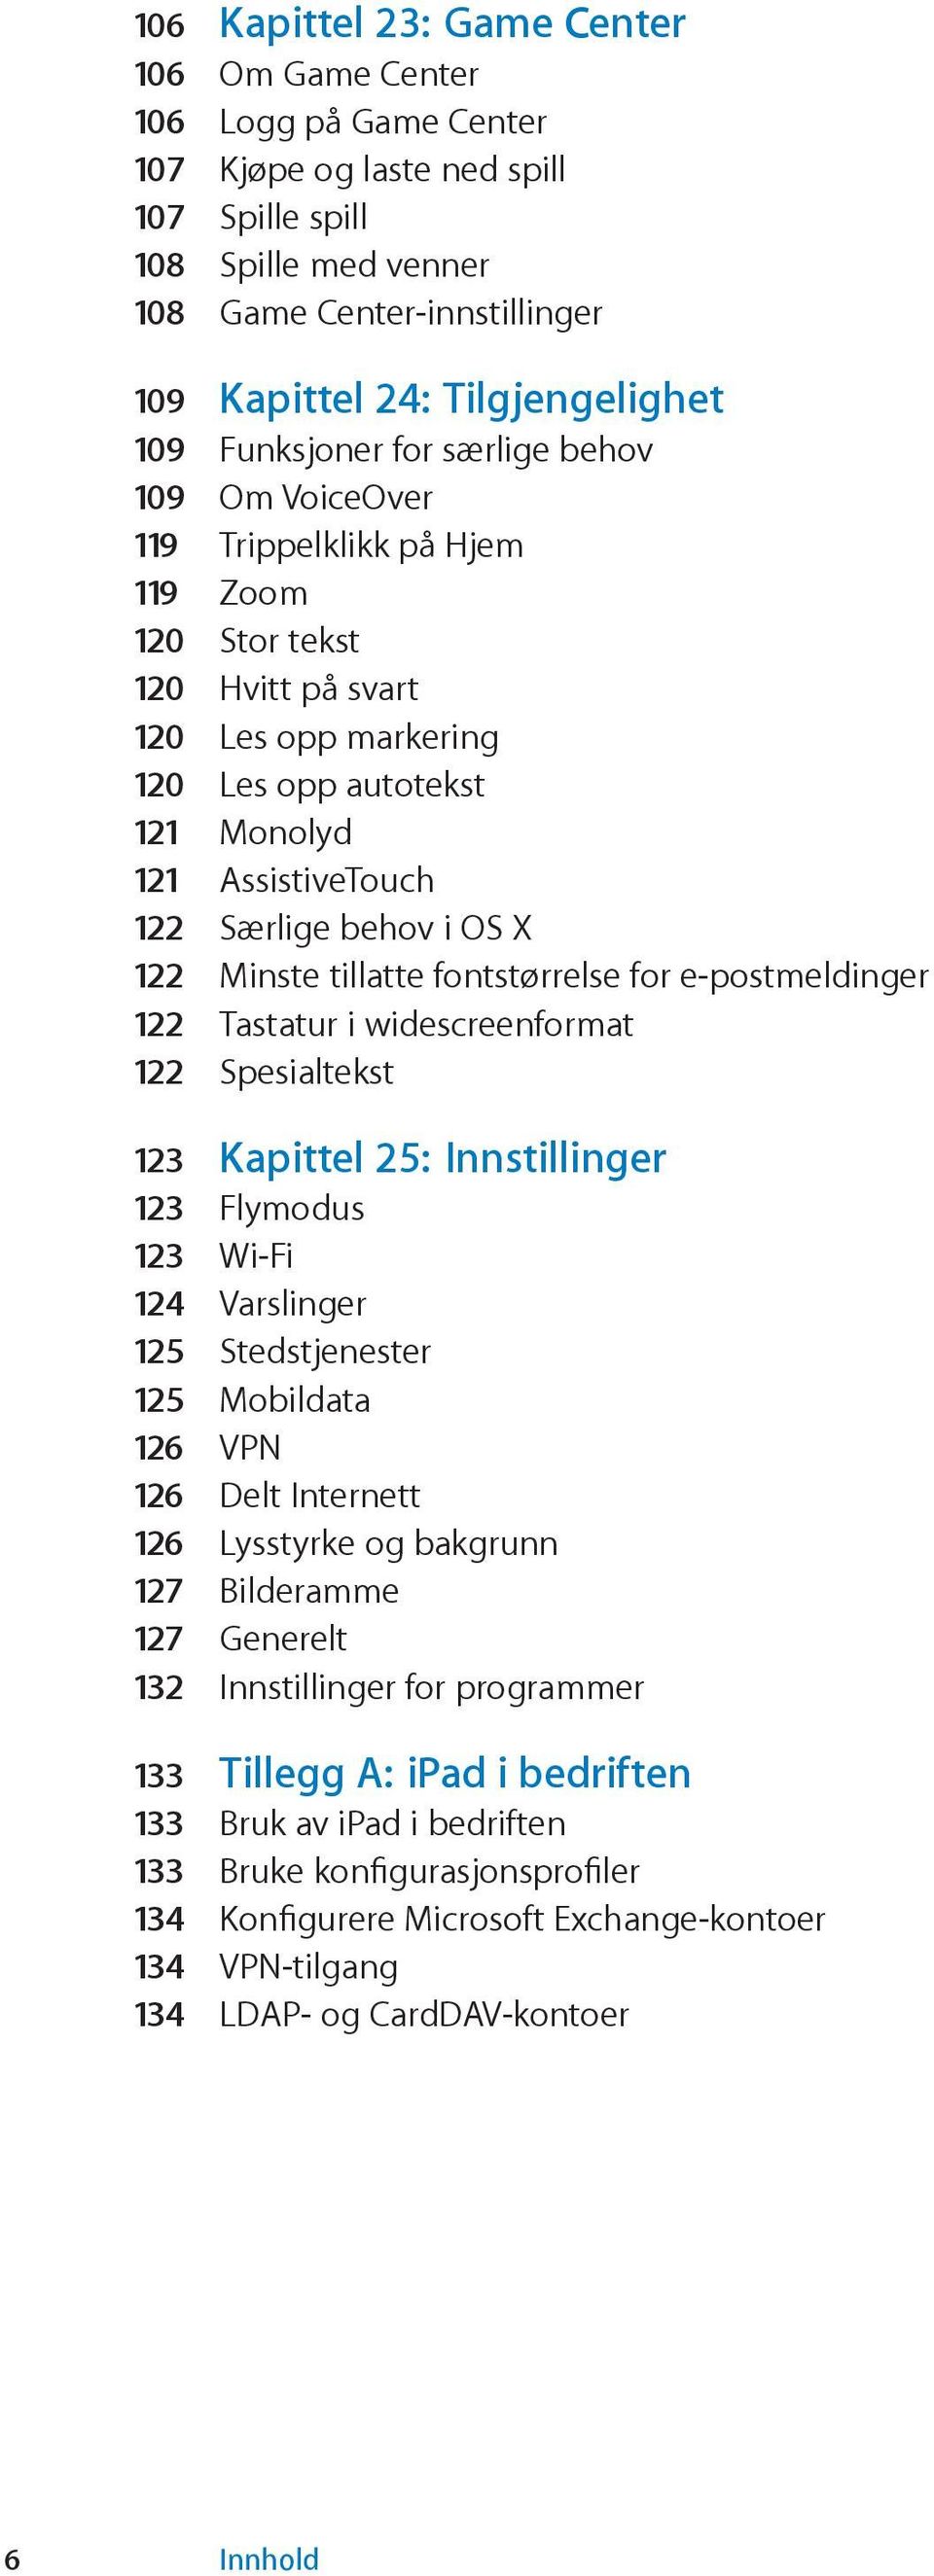 AssistiveTouch 122 Særlige behov i OS X 122 Minste tillatte fontstørrelse for e-postmeldinger 122 Tastatur i widescreenformat 122 Spesialtekst 123 Kapittel 25: Innstillinger 123 Flymodus 123 Wi-Fi